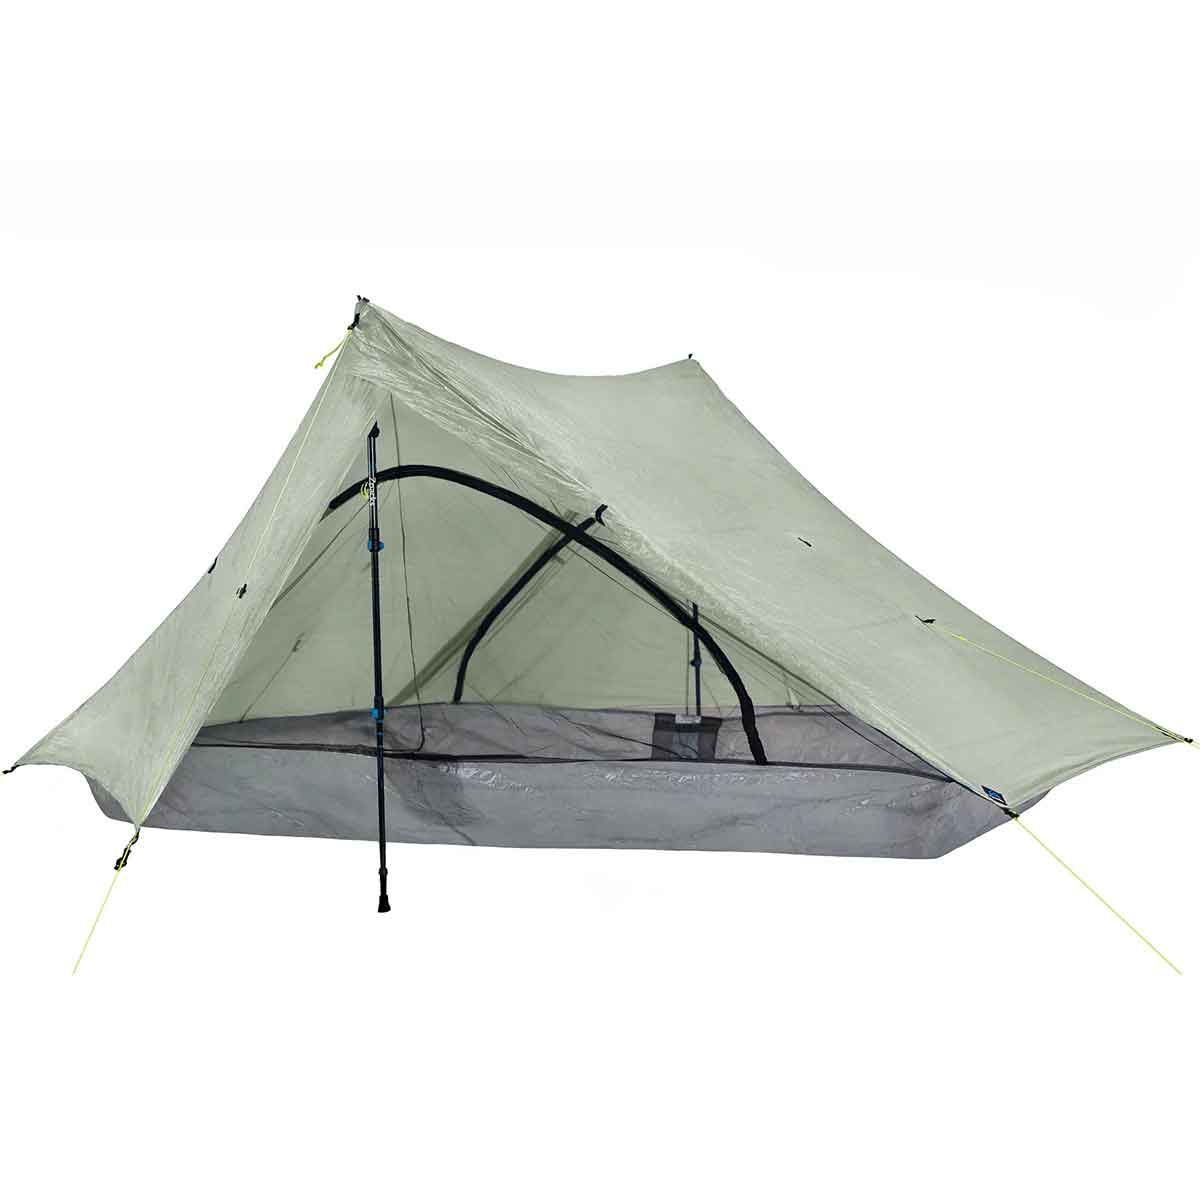 Zpacks Duplex trekking tent - 2 people